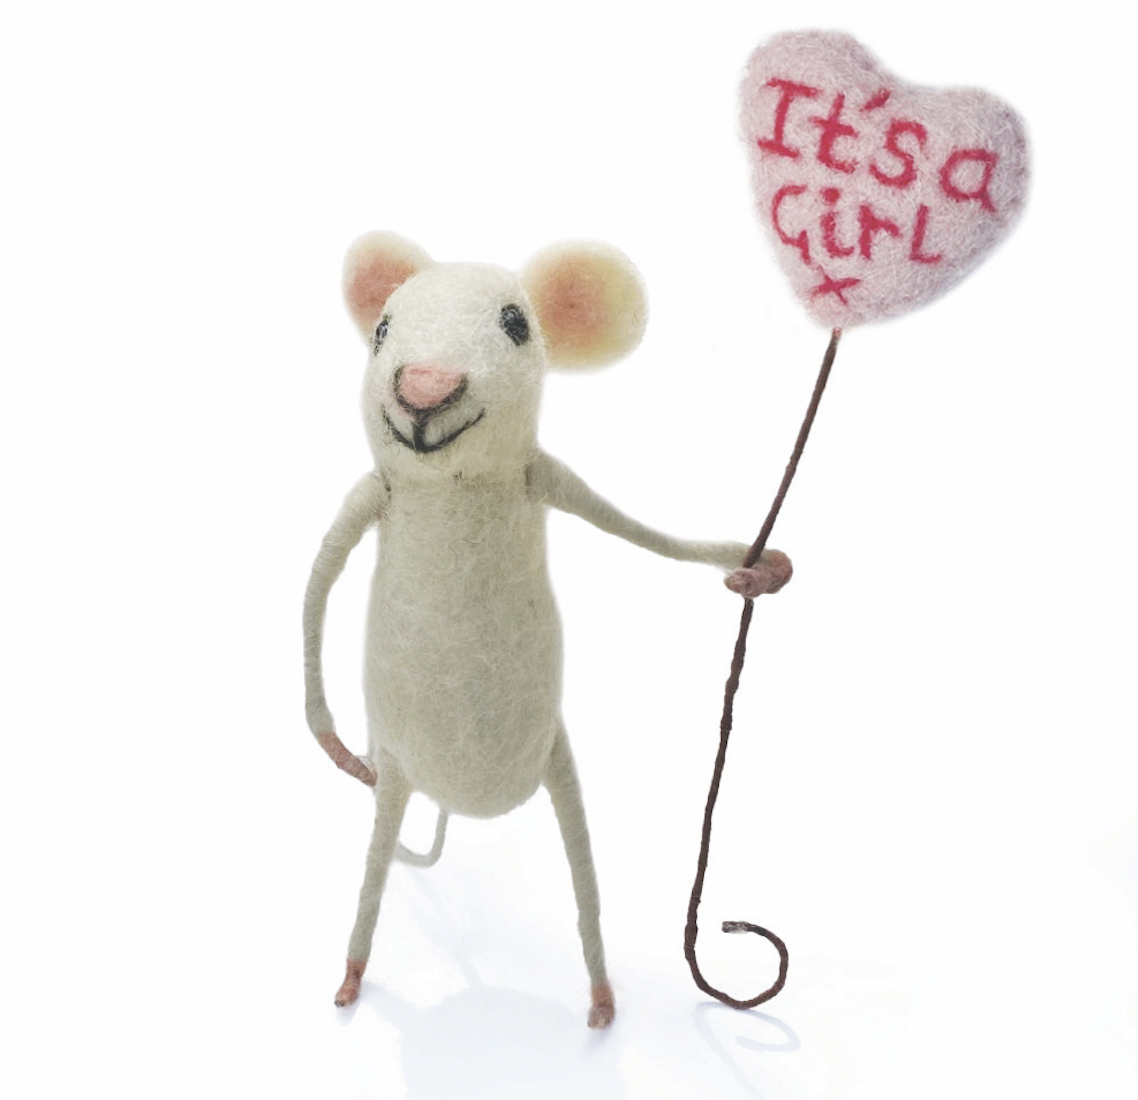 Sew Heart Felt - Gender Reveal Mouse